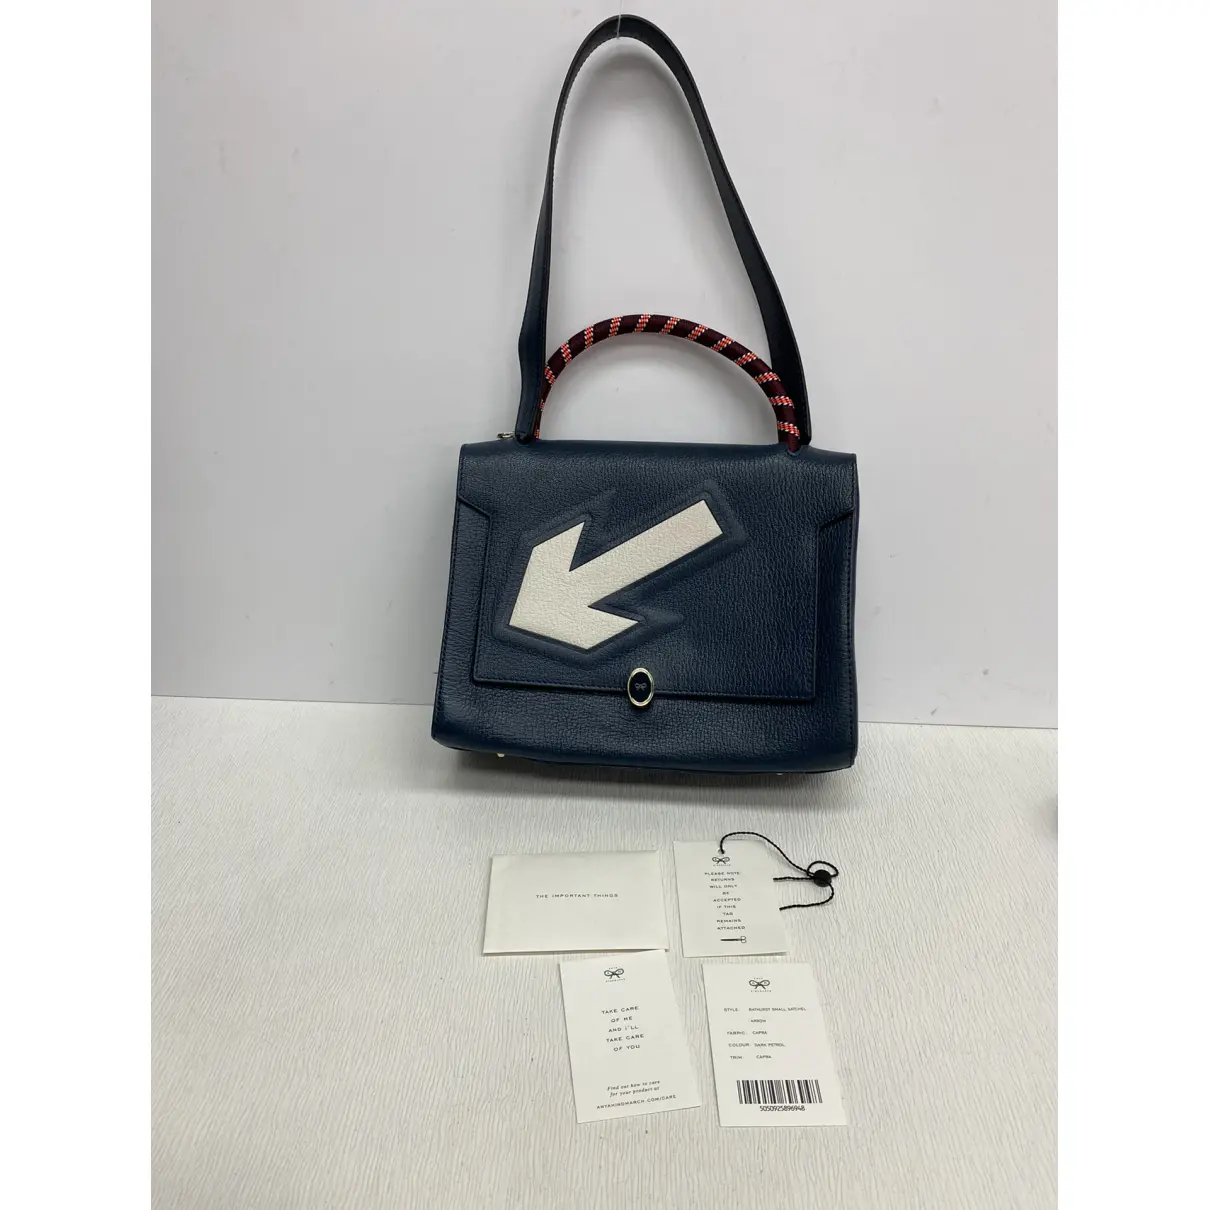 Arrow Bathurst leather handbag Anya Hindmarch